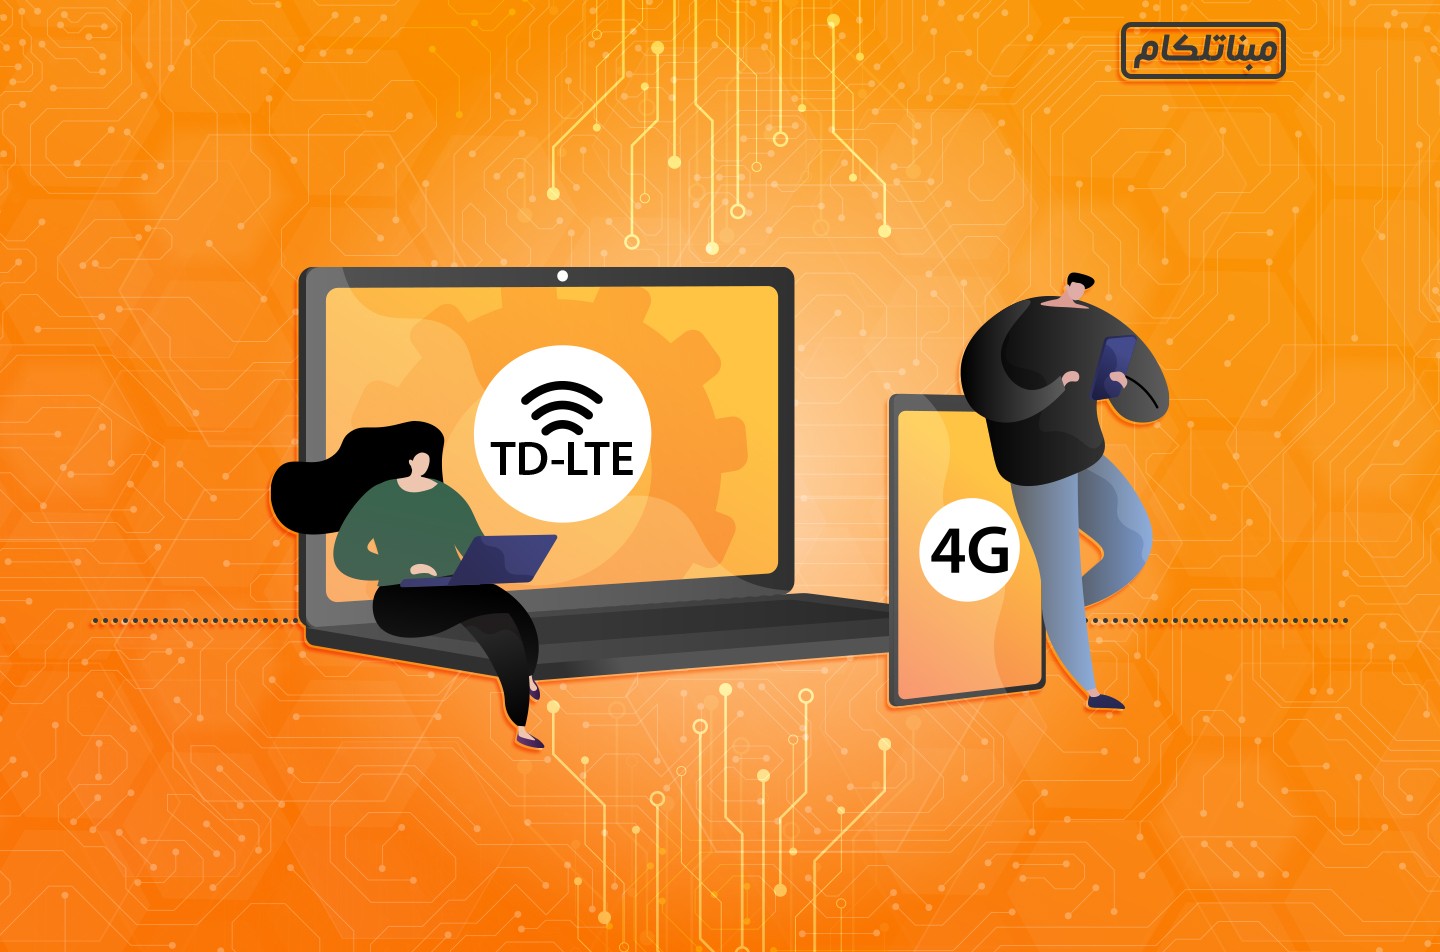 اینترنت ۴G بهتر است یا TD-LTE؟